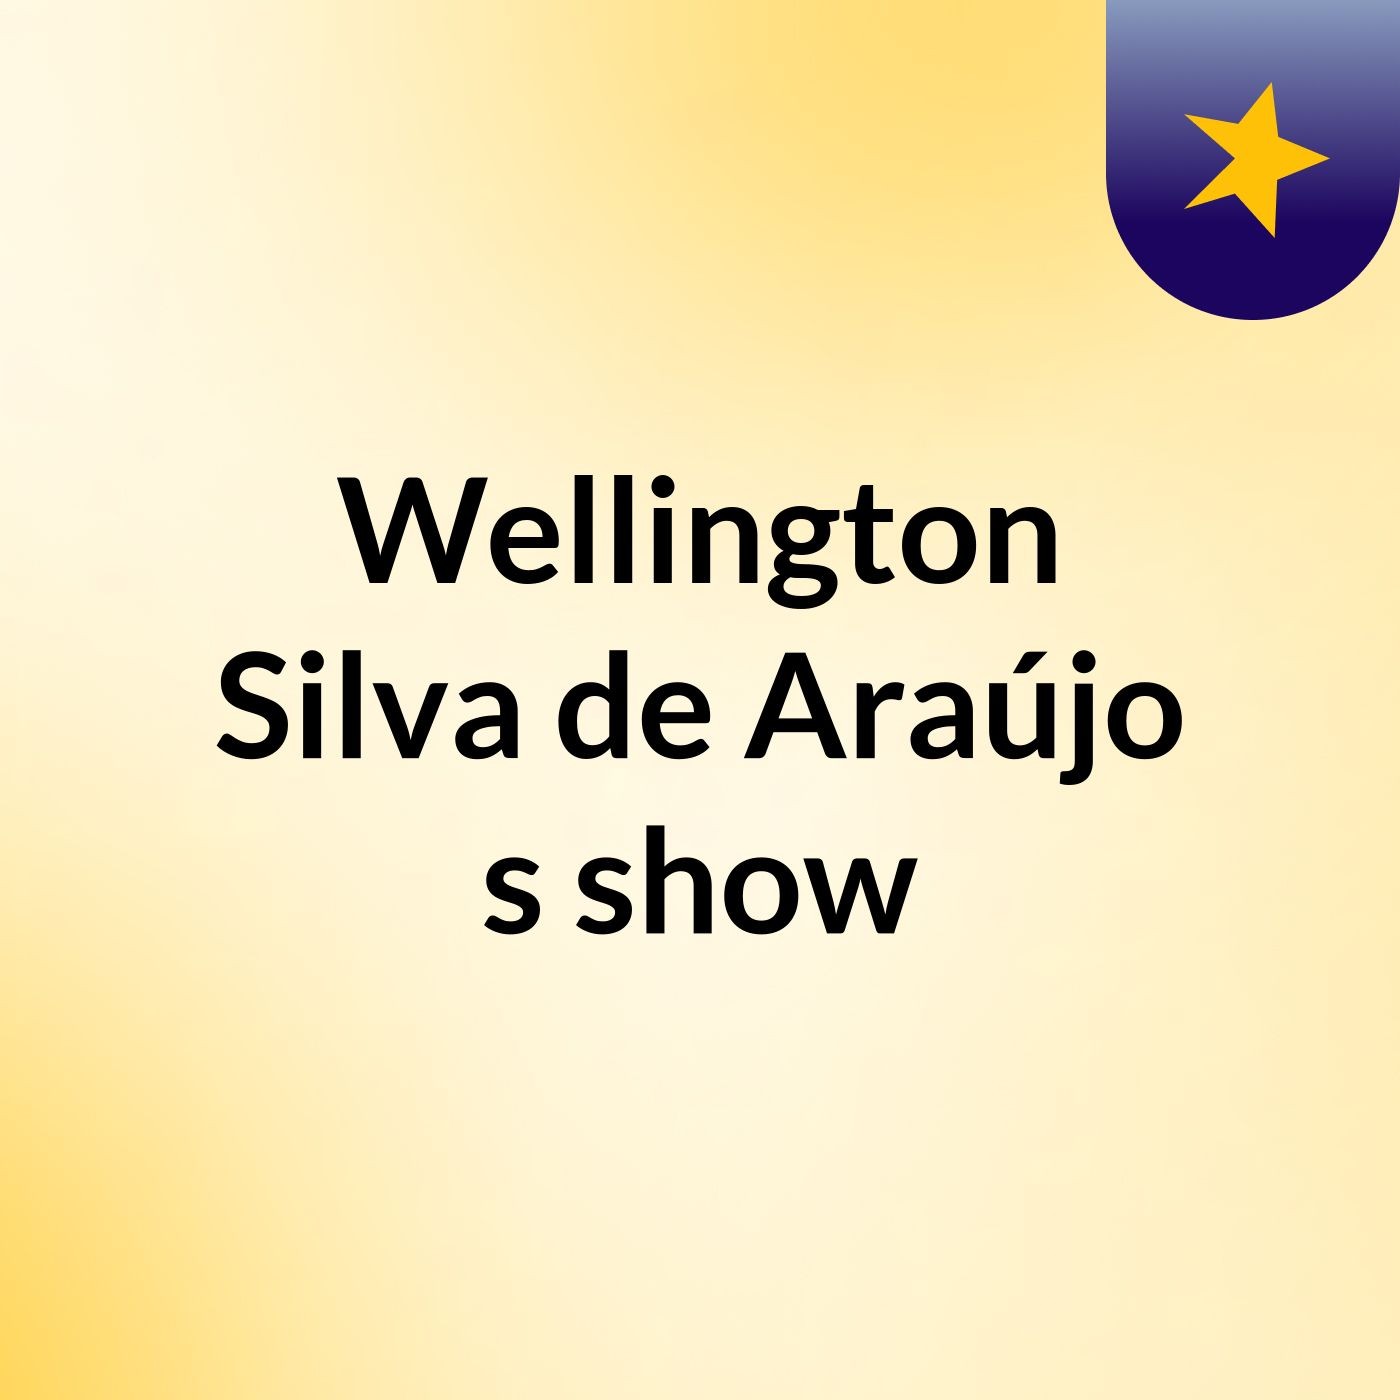 Wellington Silva de Araújo's show